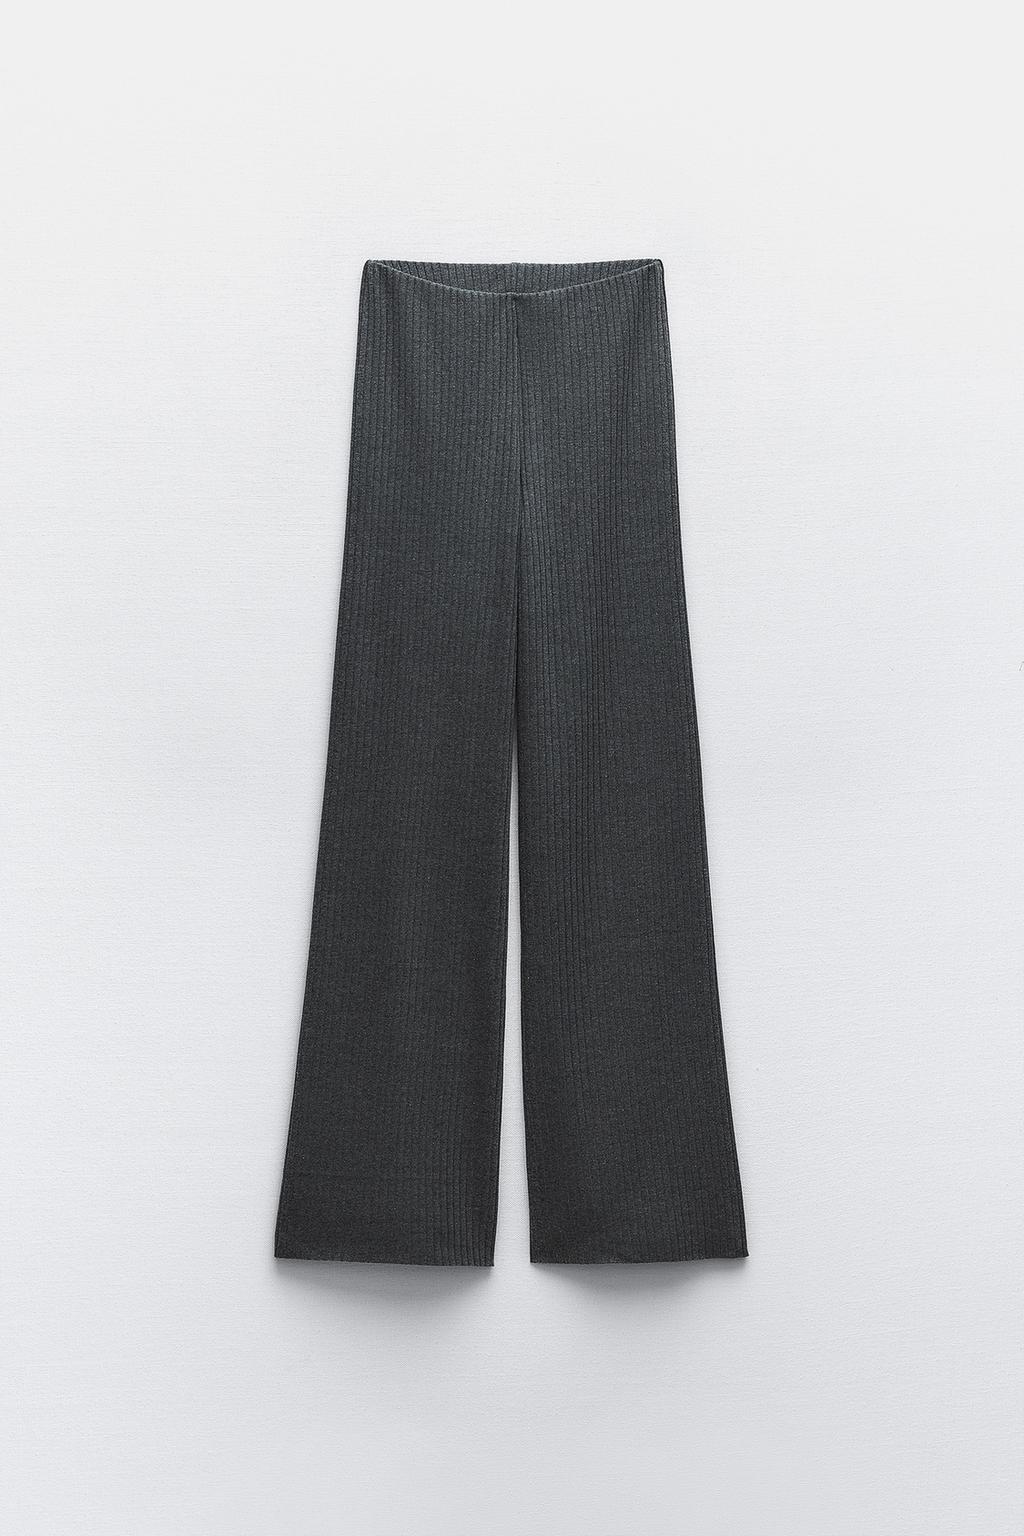 Широкие брюки в ребрику ZARA, серый мергель широкие брюки в ребрику zara бежевый